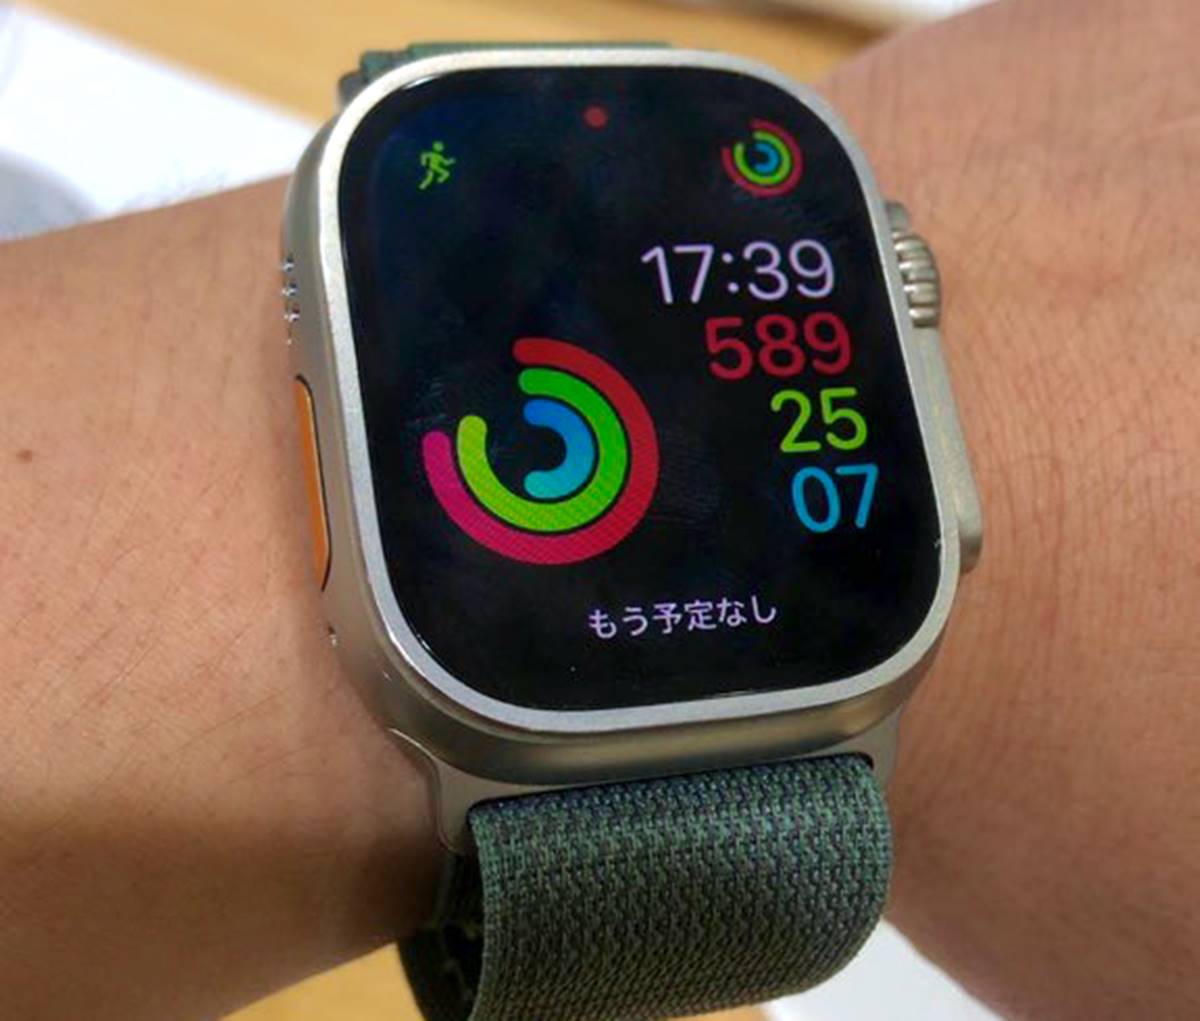 Apple Watch Ultra aurait un écran 10% plus grand en 2024